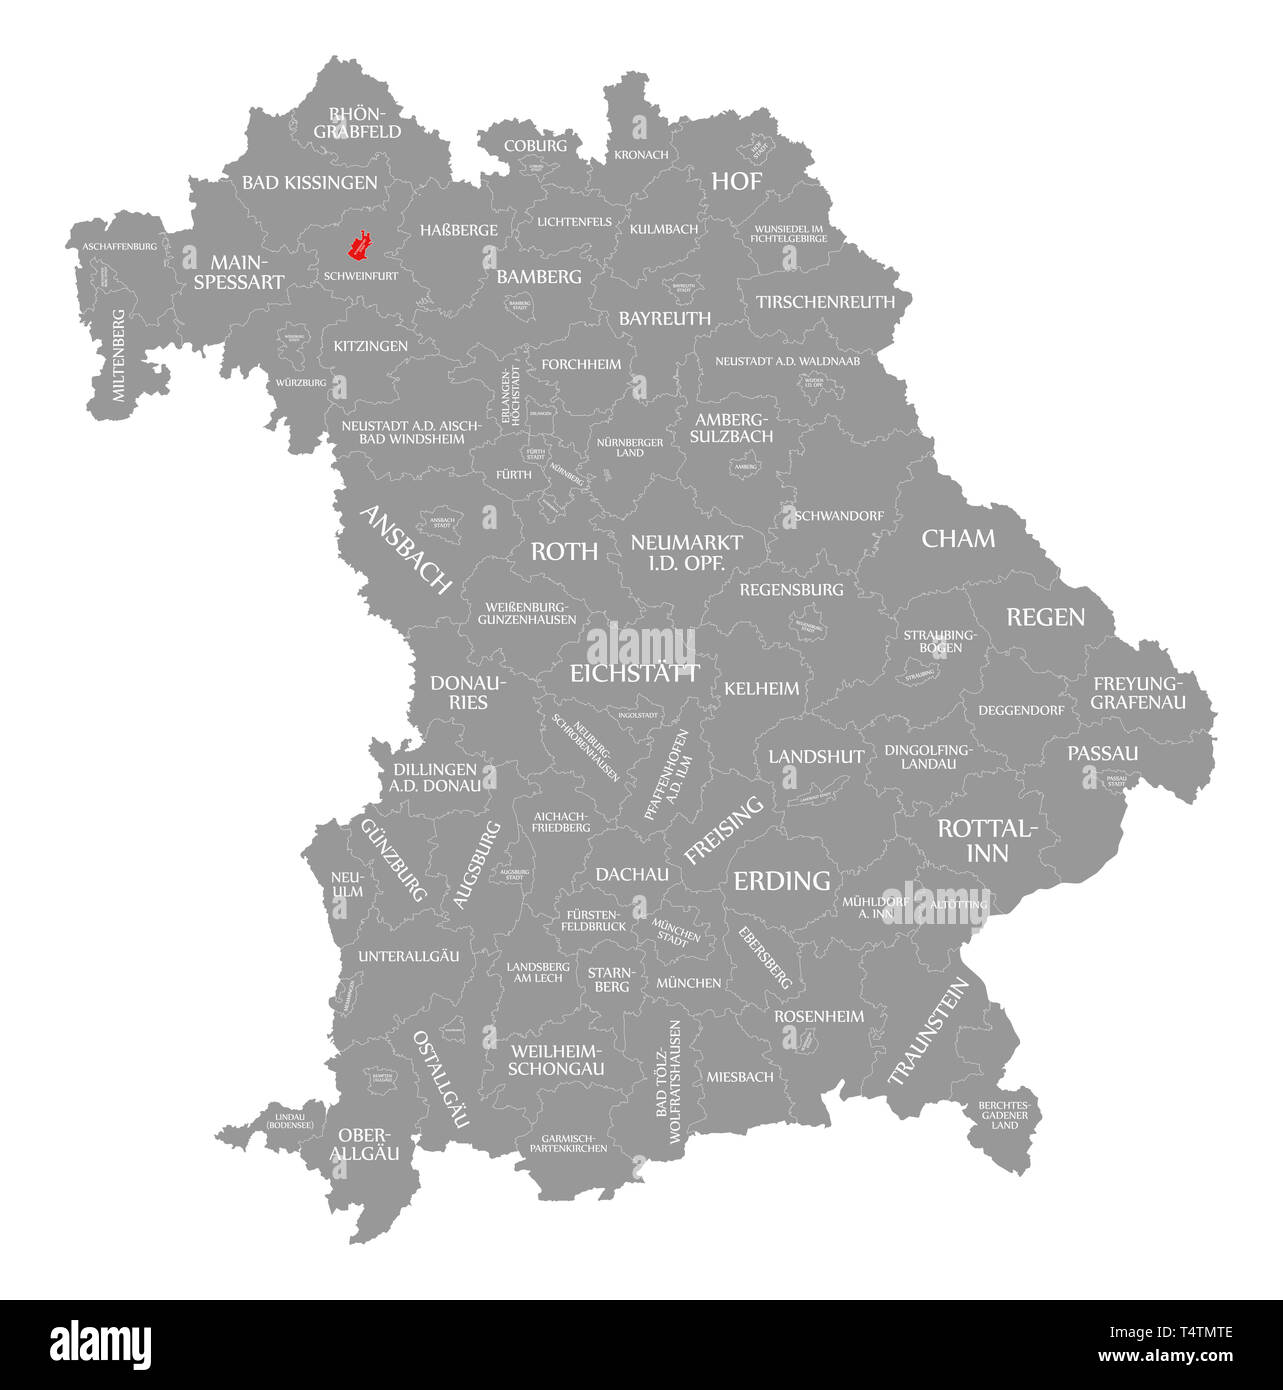 Schweinfurt Stadt rot in der Karte von Bayern Deutschland hervorgehoben Stockfoto